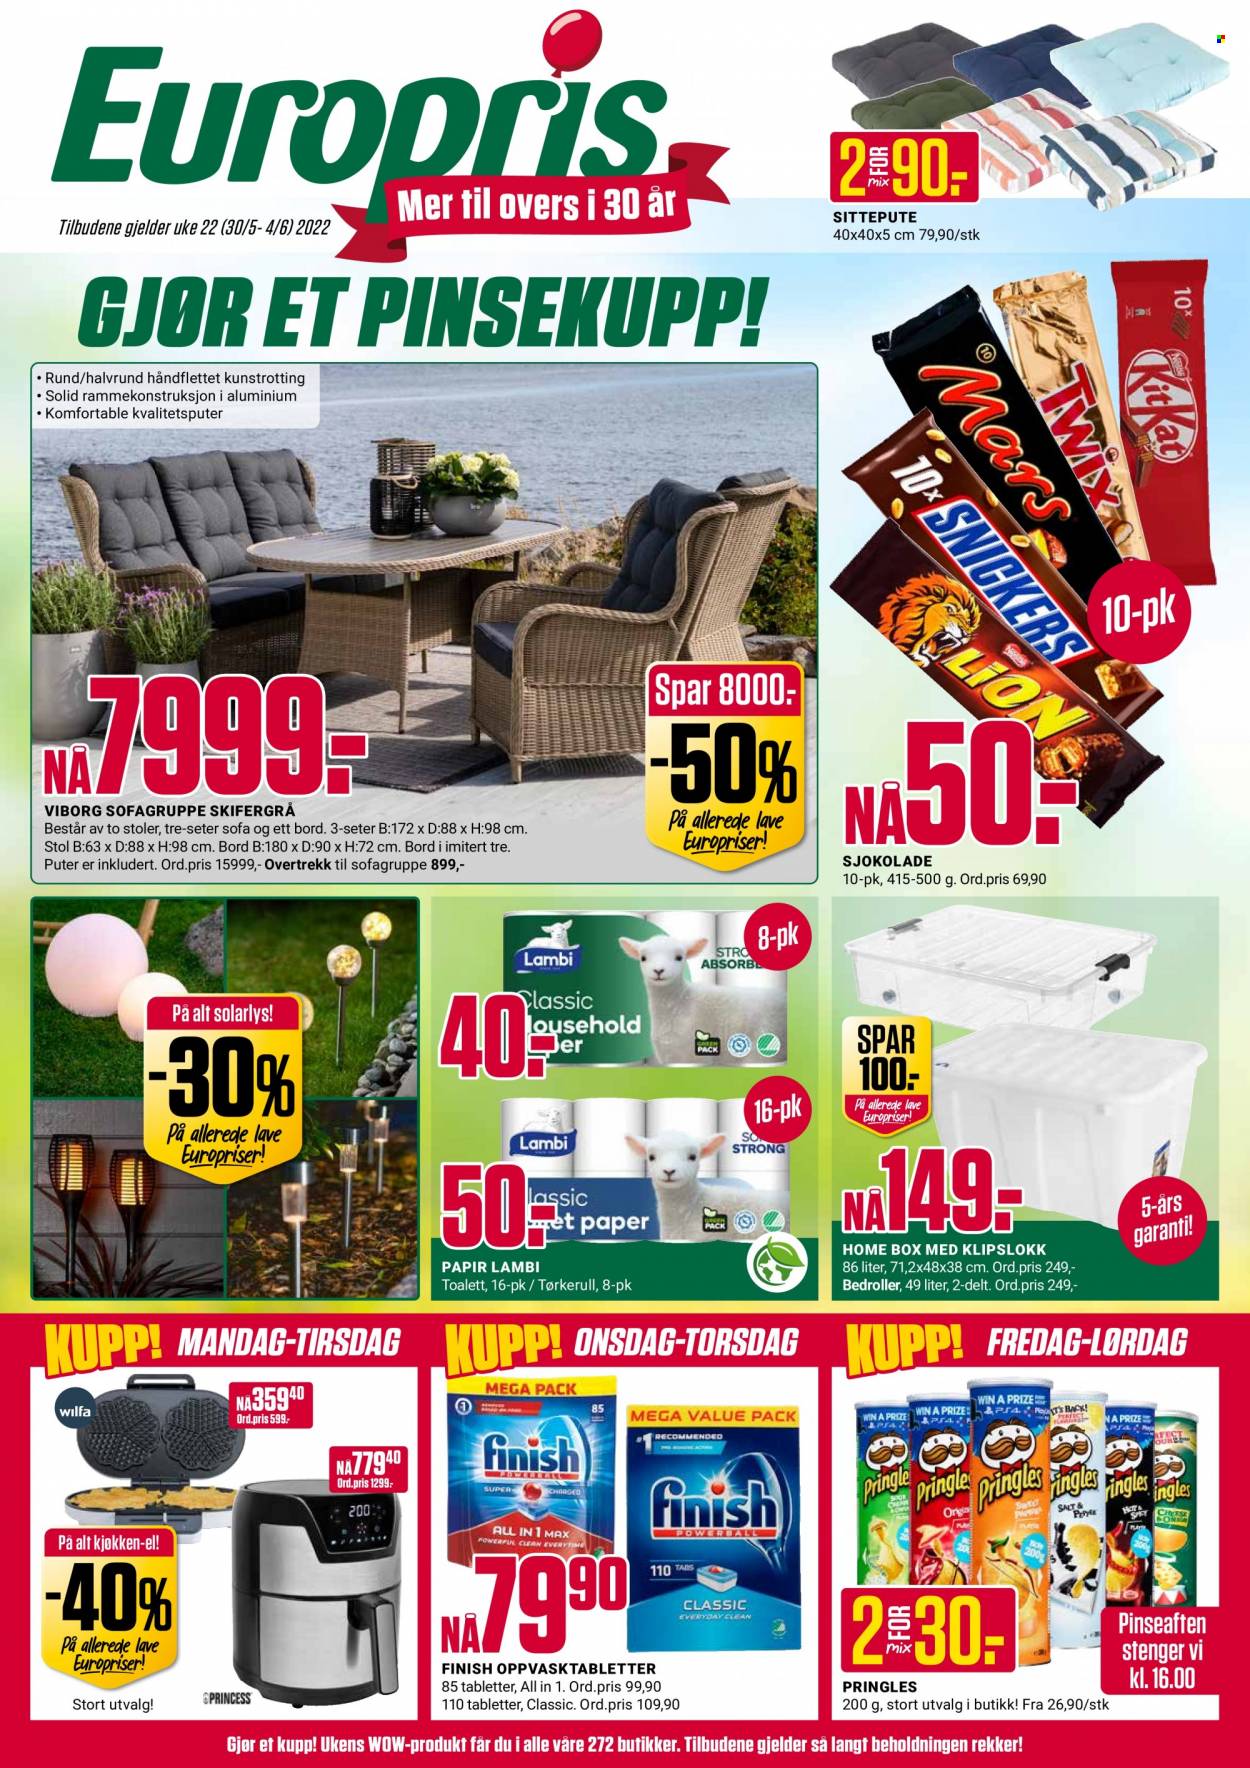 thumbnail - Kundeavis Europris - 30.5.2022 - 4.6.2022 - Produkter fra tilbudsaviser - sjokolade, Pringles, tørkerull, pute, stol, sofa, bord. Side 1.